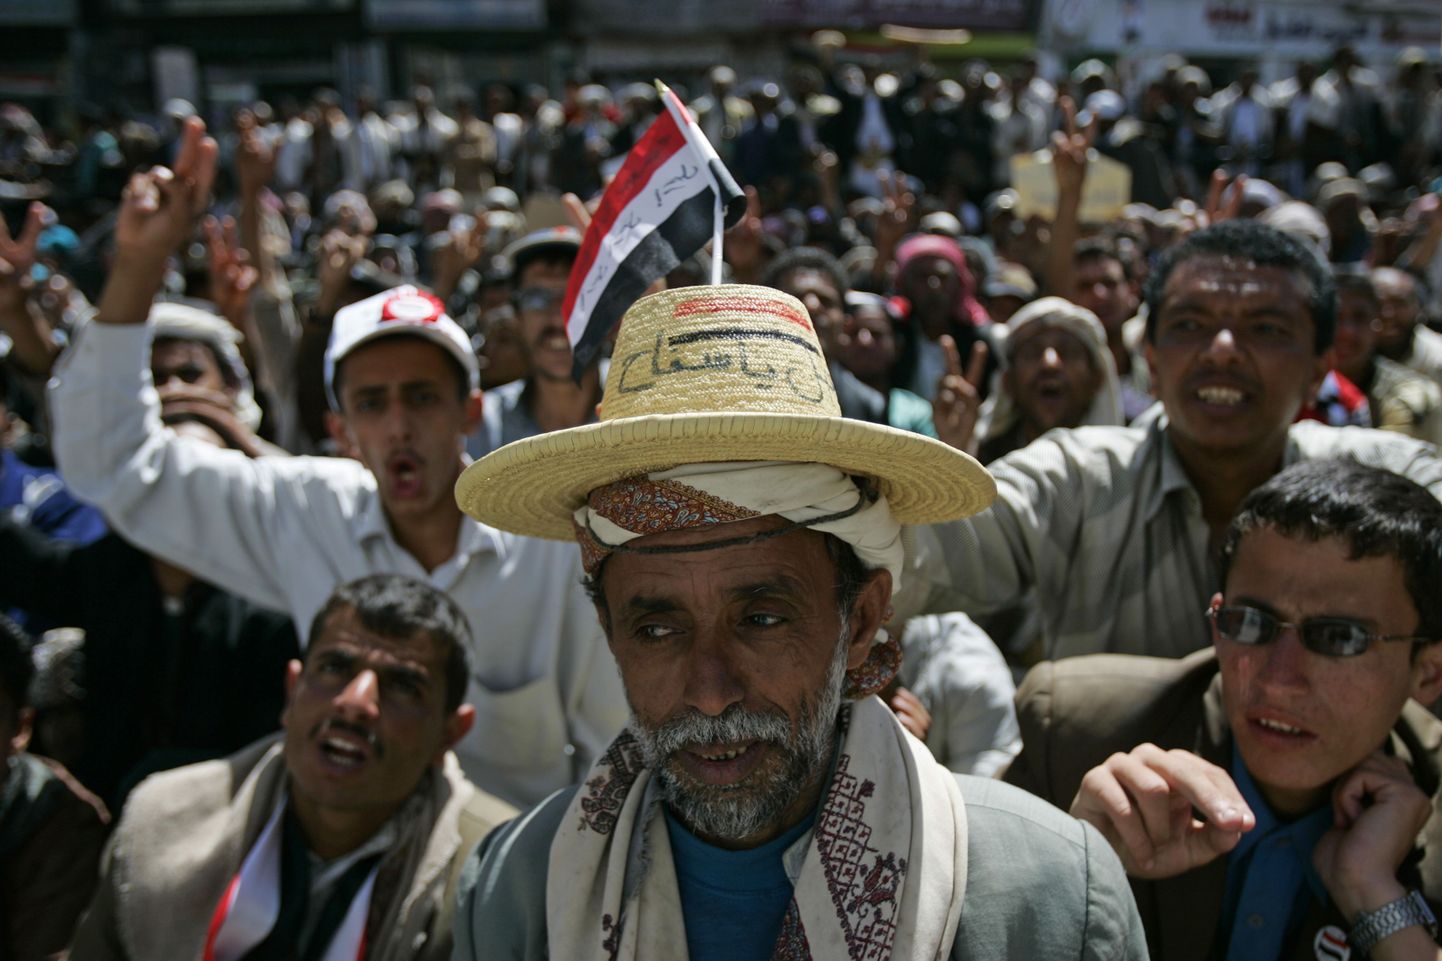 Presidendi lahkumist nõudvad meeleavaldajad Jeemenis Sanaa ülikooli juures.